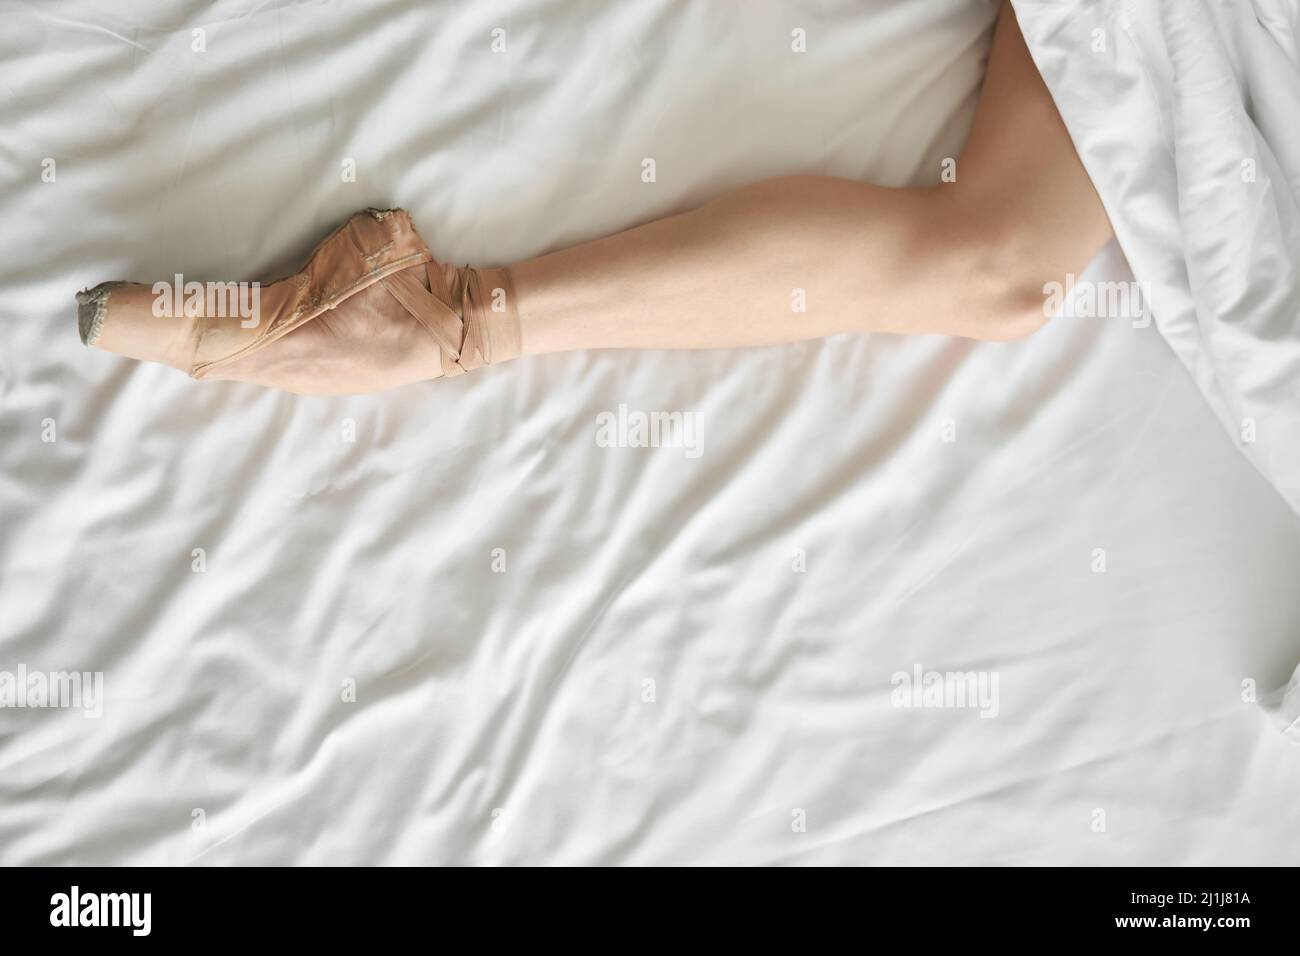 Die Frau im spitzenschuh zeigt ihr Bein aus dem Deckchen Stockfoto